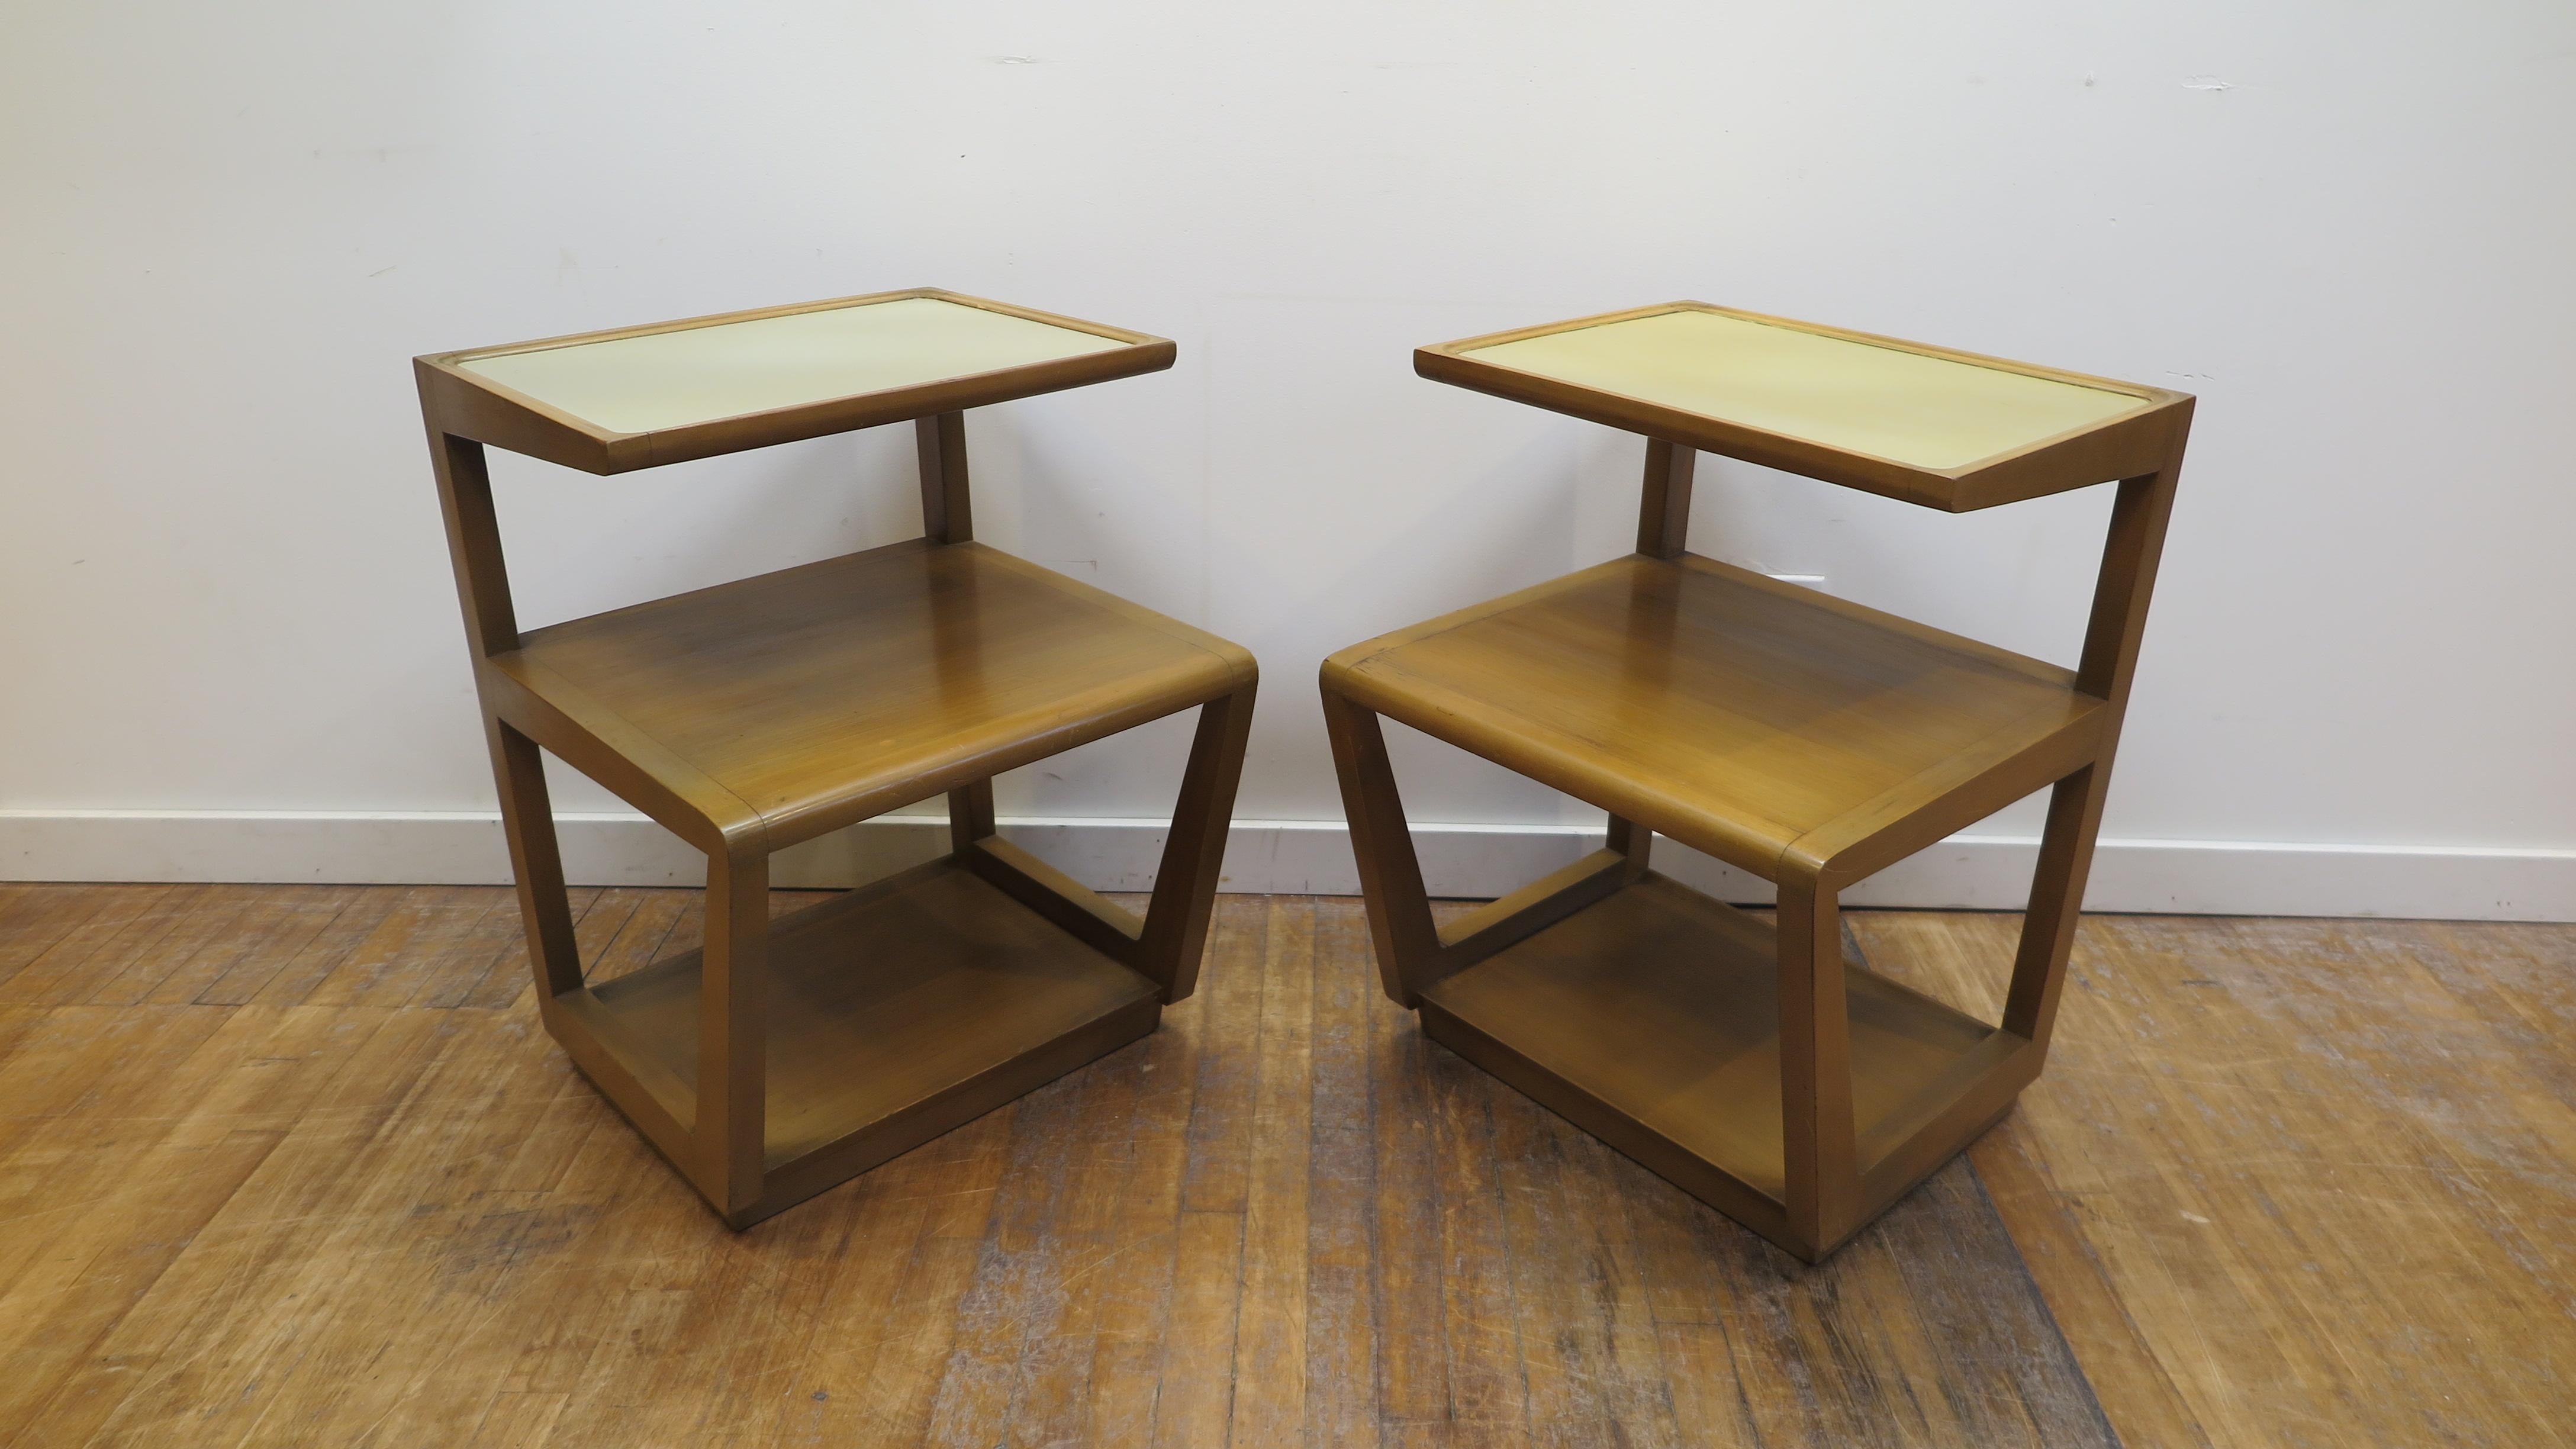 Paar von Edward Wormley abgestuften Endtische Präzedenzfall Linie für Drexel. Ein frühes Paar von Edward Wormley Modernismus entworfen End Tabellen. Diese architektonisch brillanten und atemberaubenden Tische sind bei Sammlern sehr begehrt. Ihre